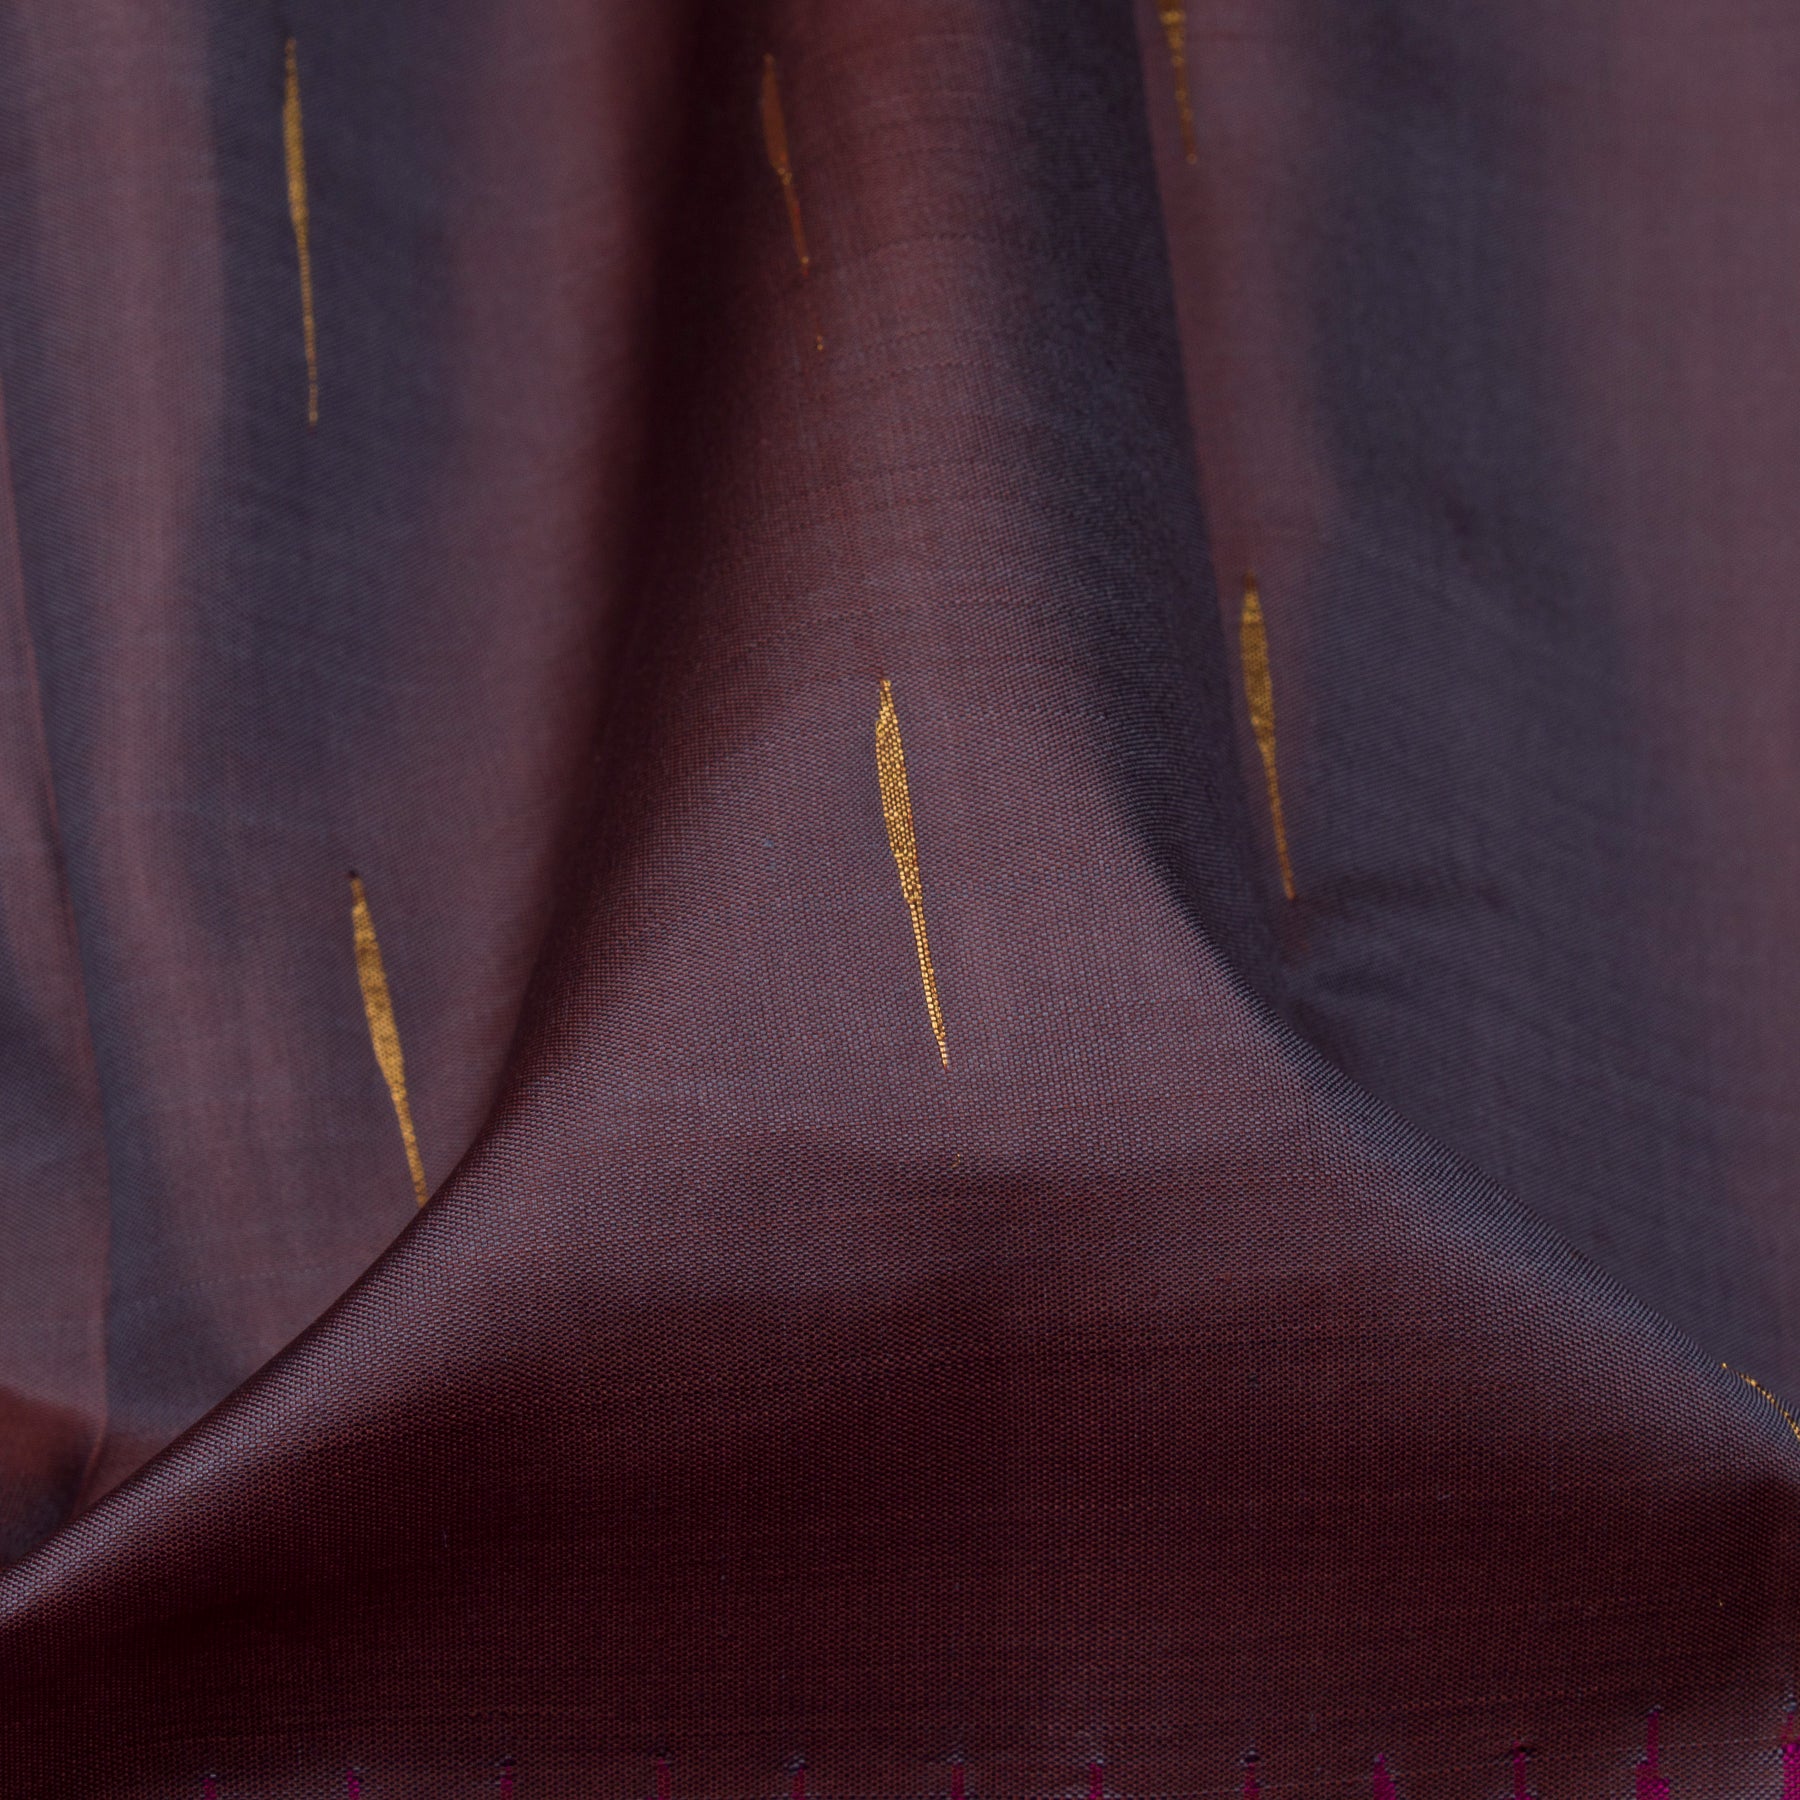 Kanakavalli Kanjivaram Silk Sari 23-560-HS001-09127 - Fabric View